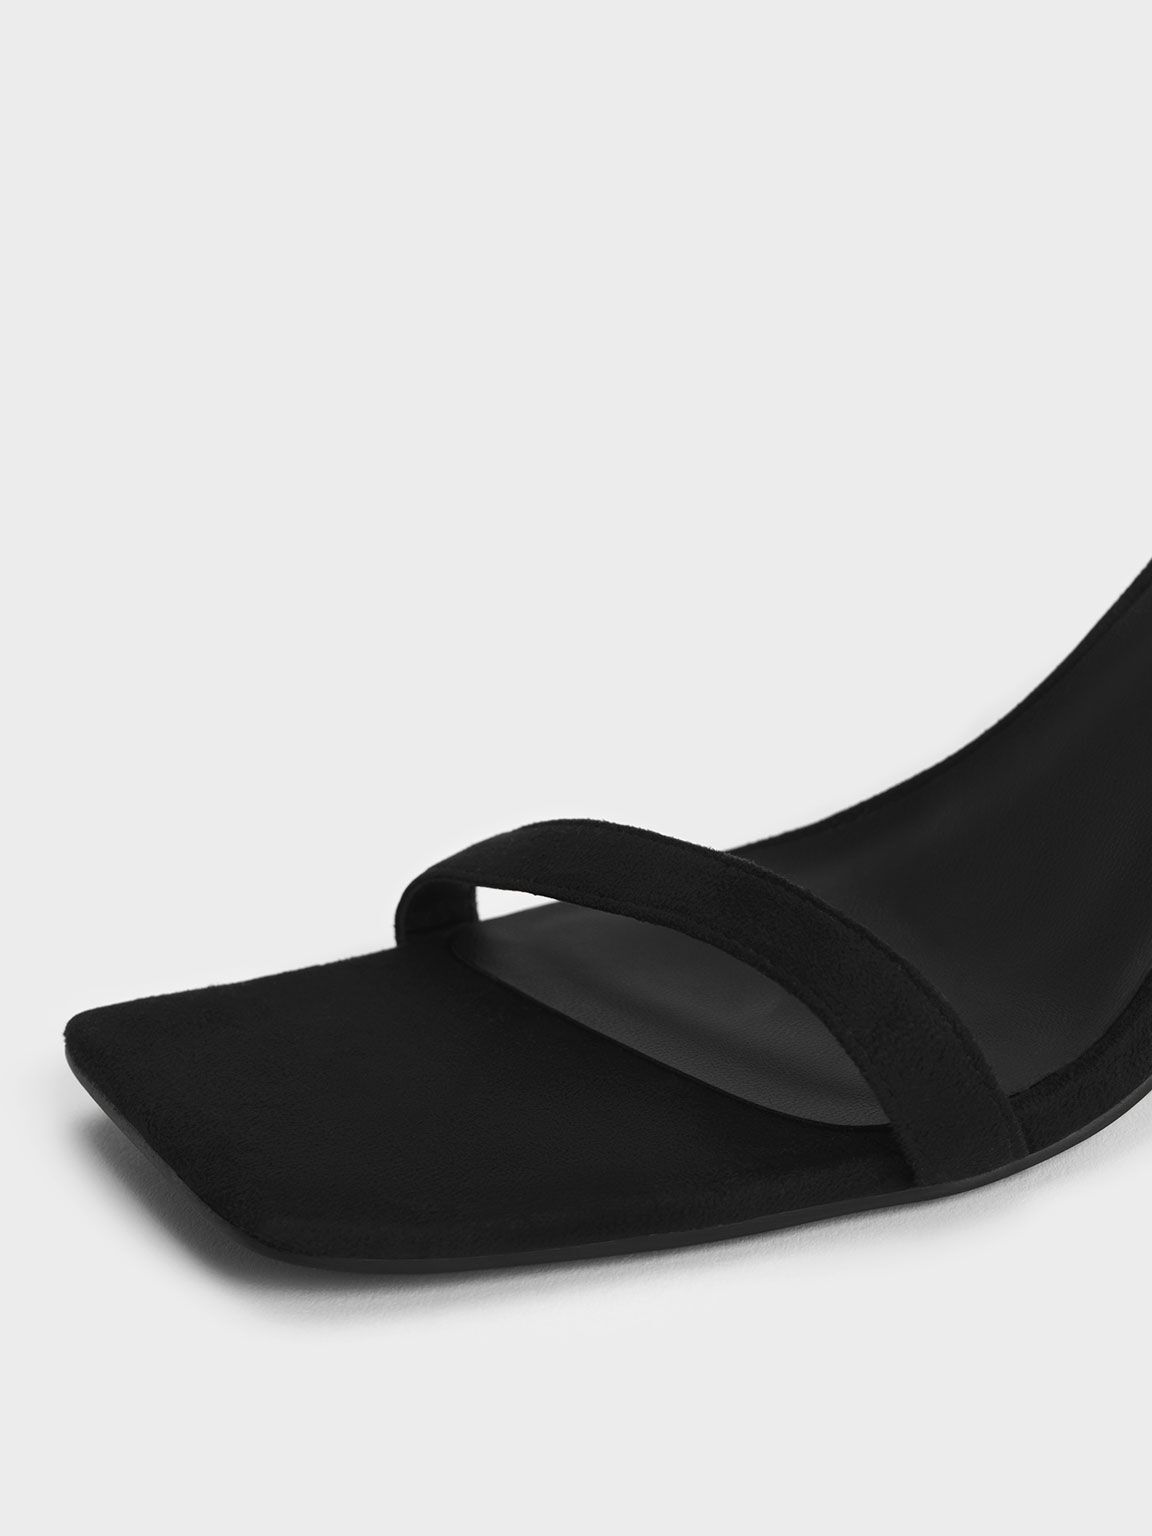 Textured Ankle-Strap Heeled Sandals, Black, hi-res